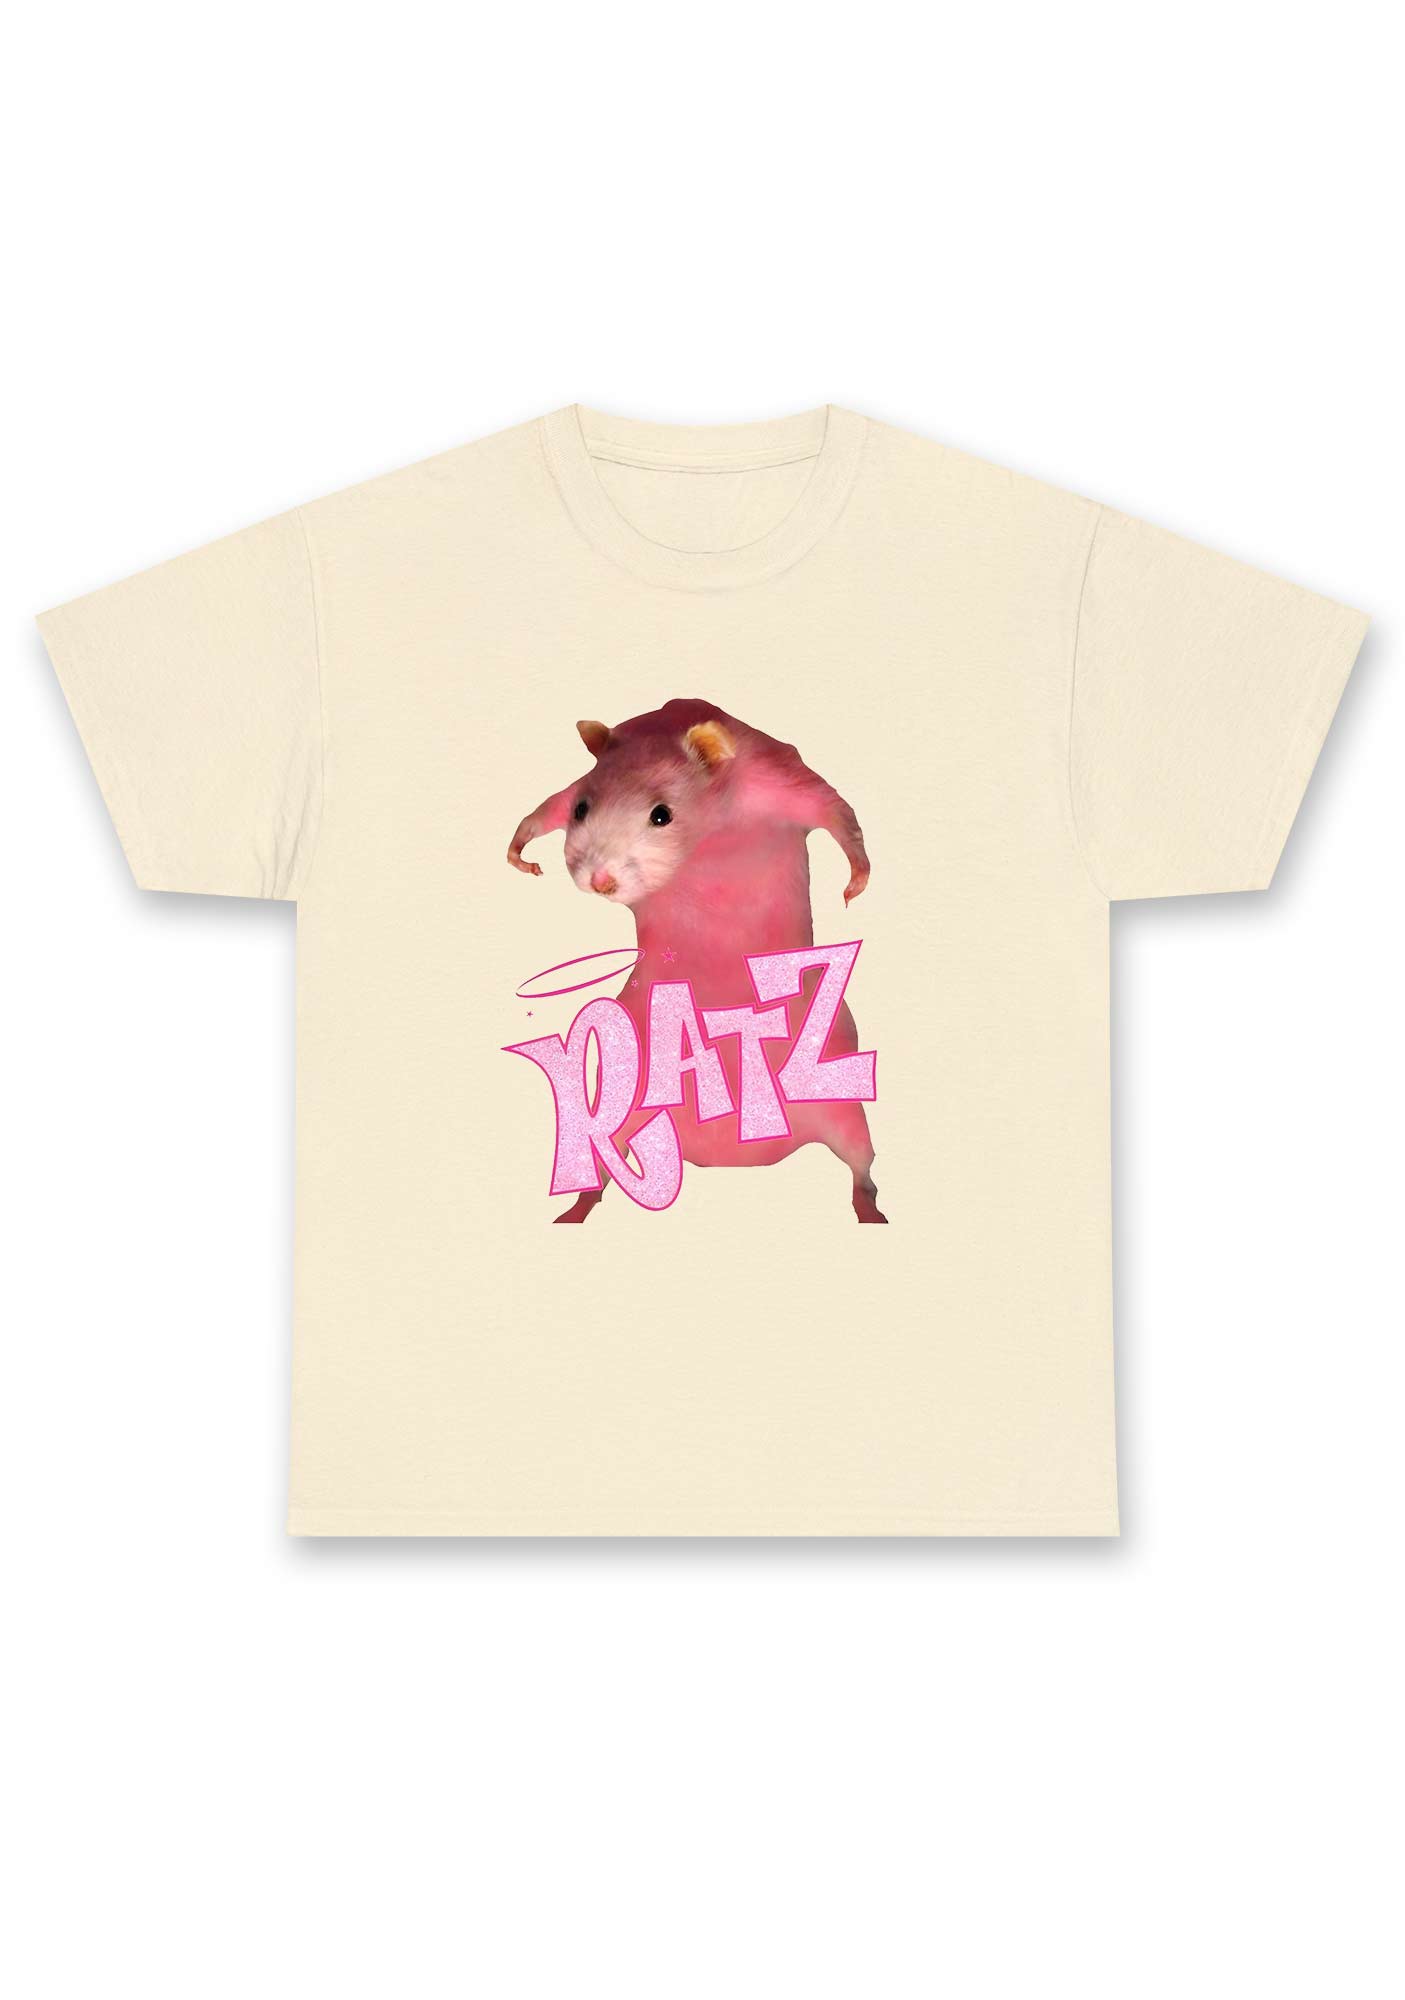 Pink Ratz Chunky Shirt